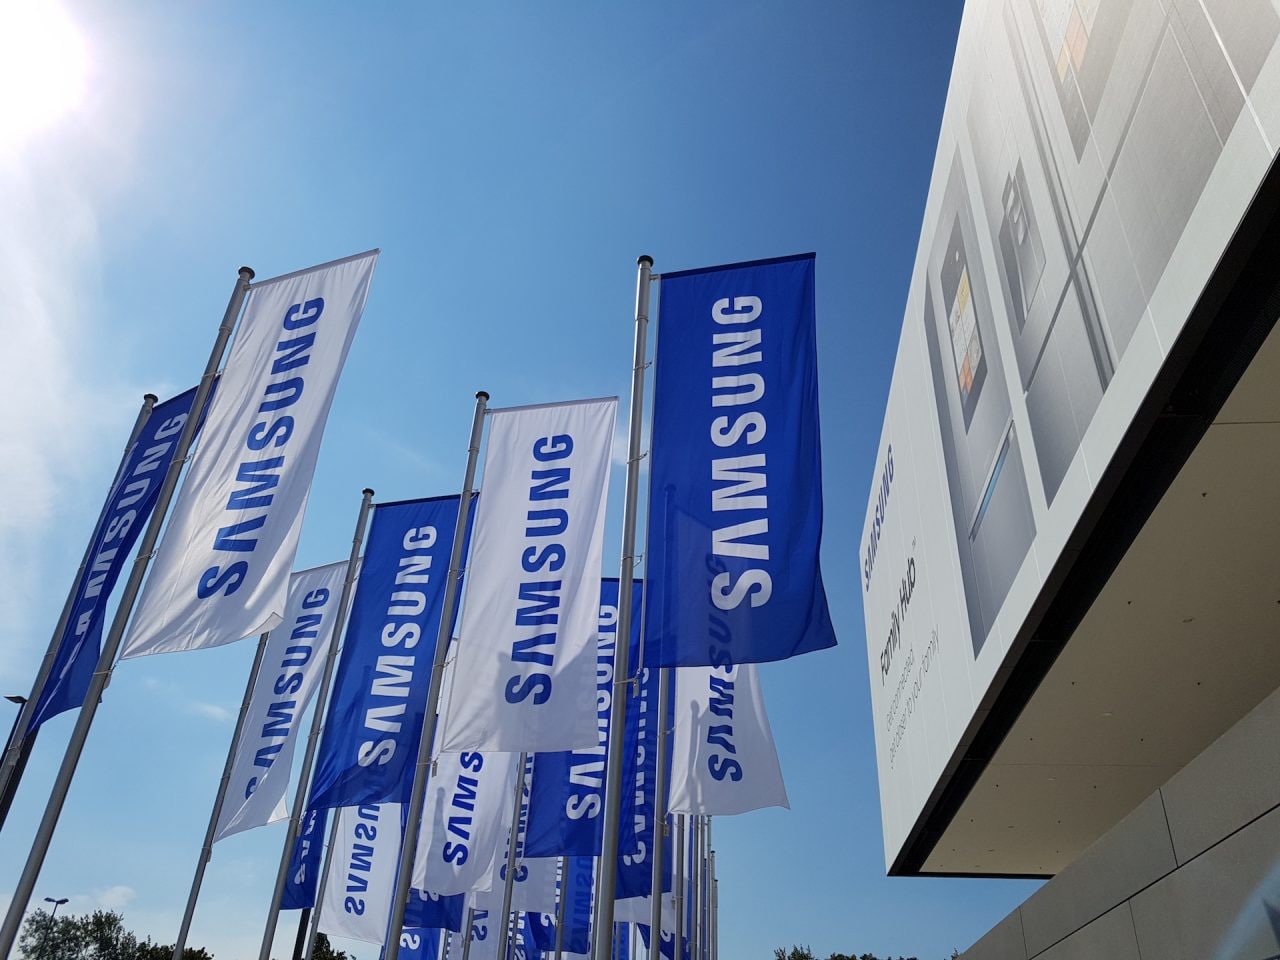 Samsung conferma: Galaxy S10 non correrà il rischio di somigliare troppo ai predecessori